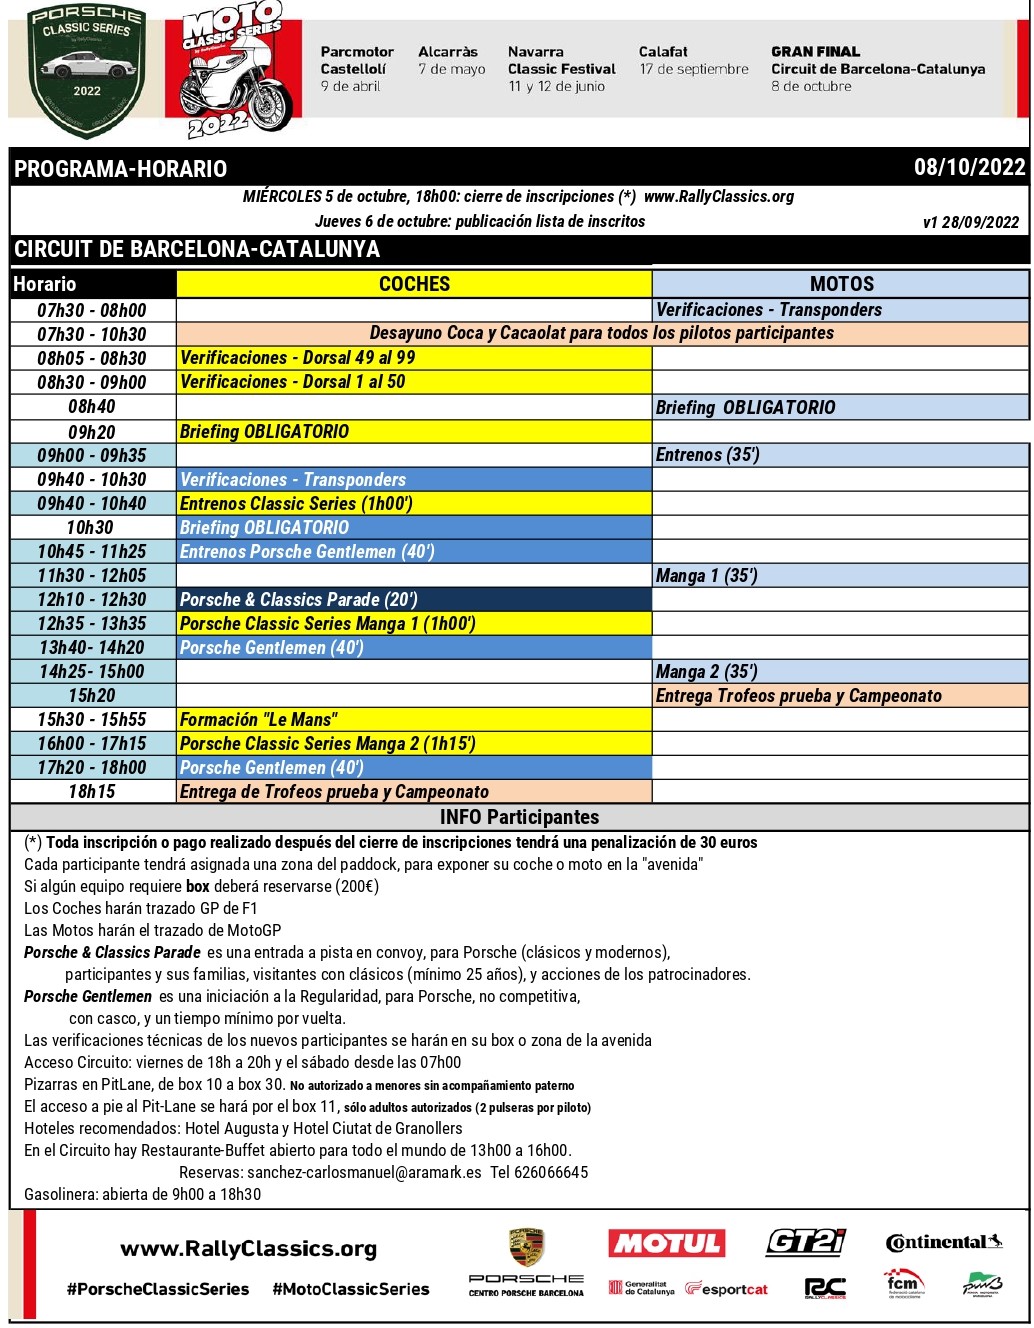 Schedule Porsche Classic Series Circuit de Barcelona Catalunya 2022